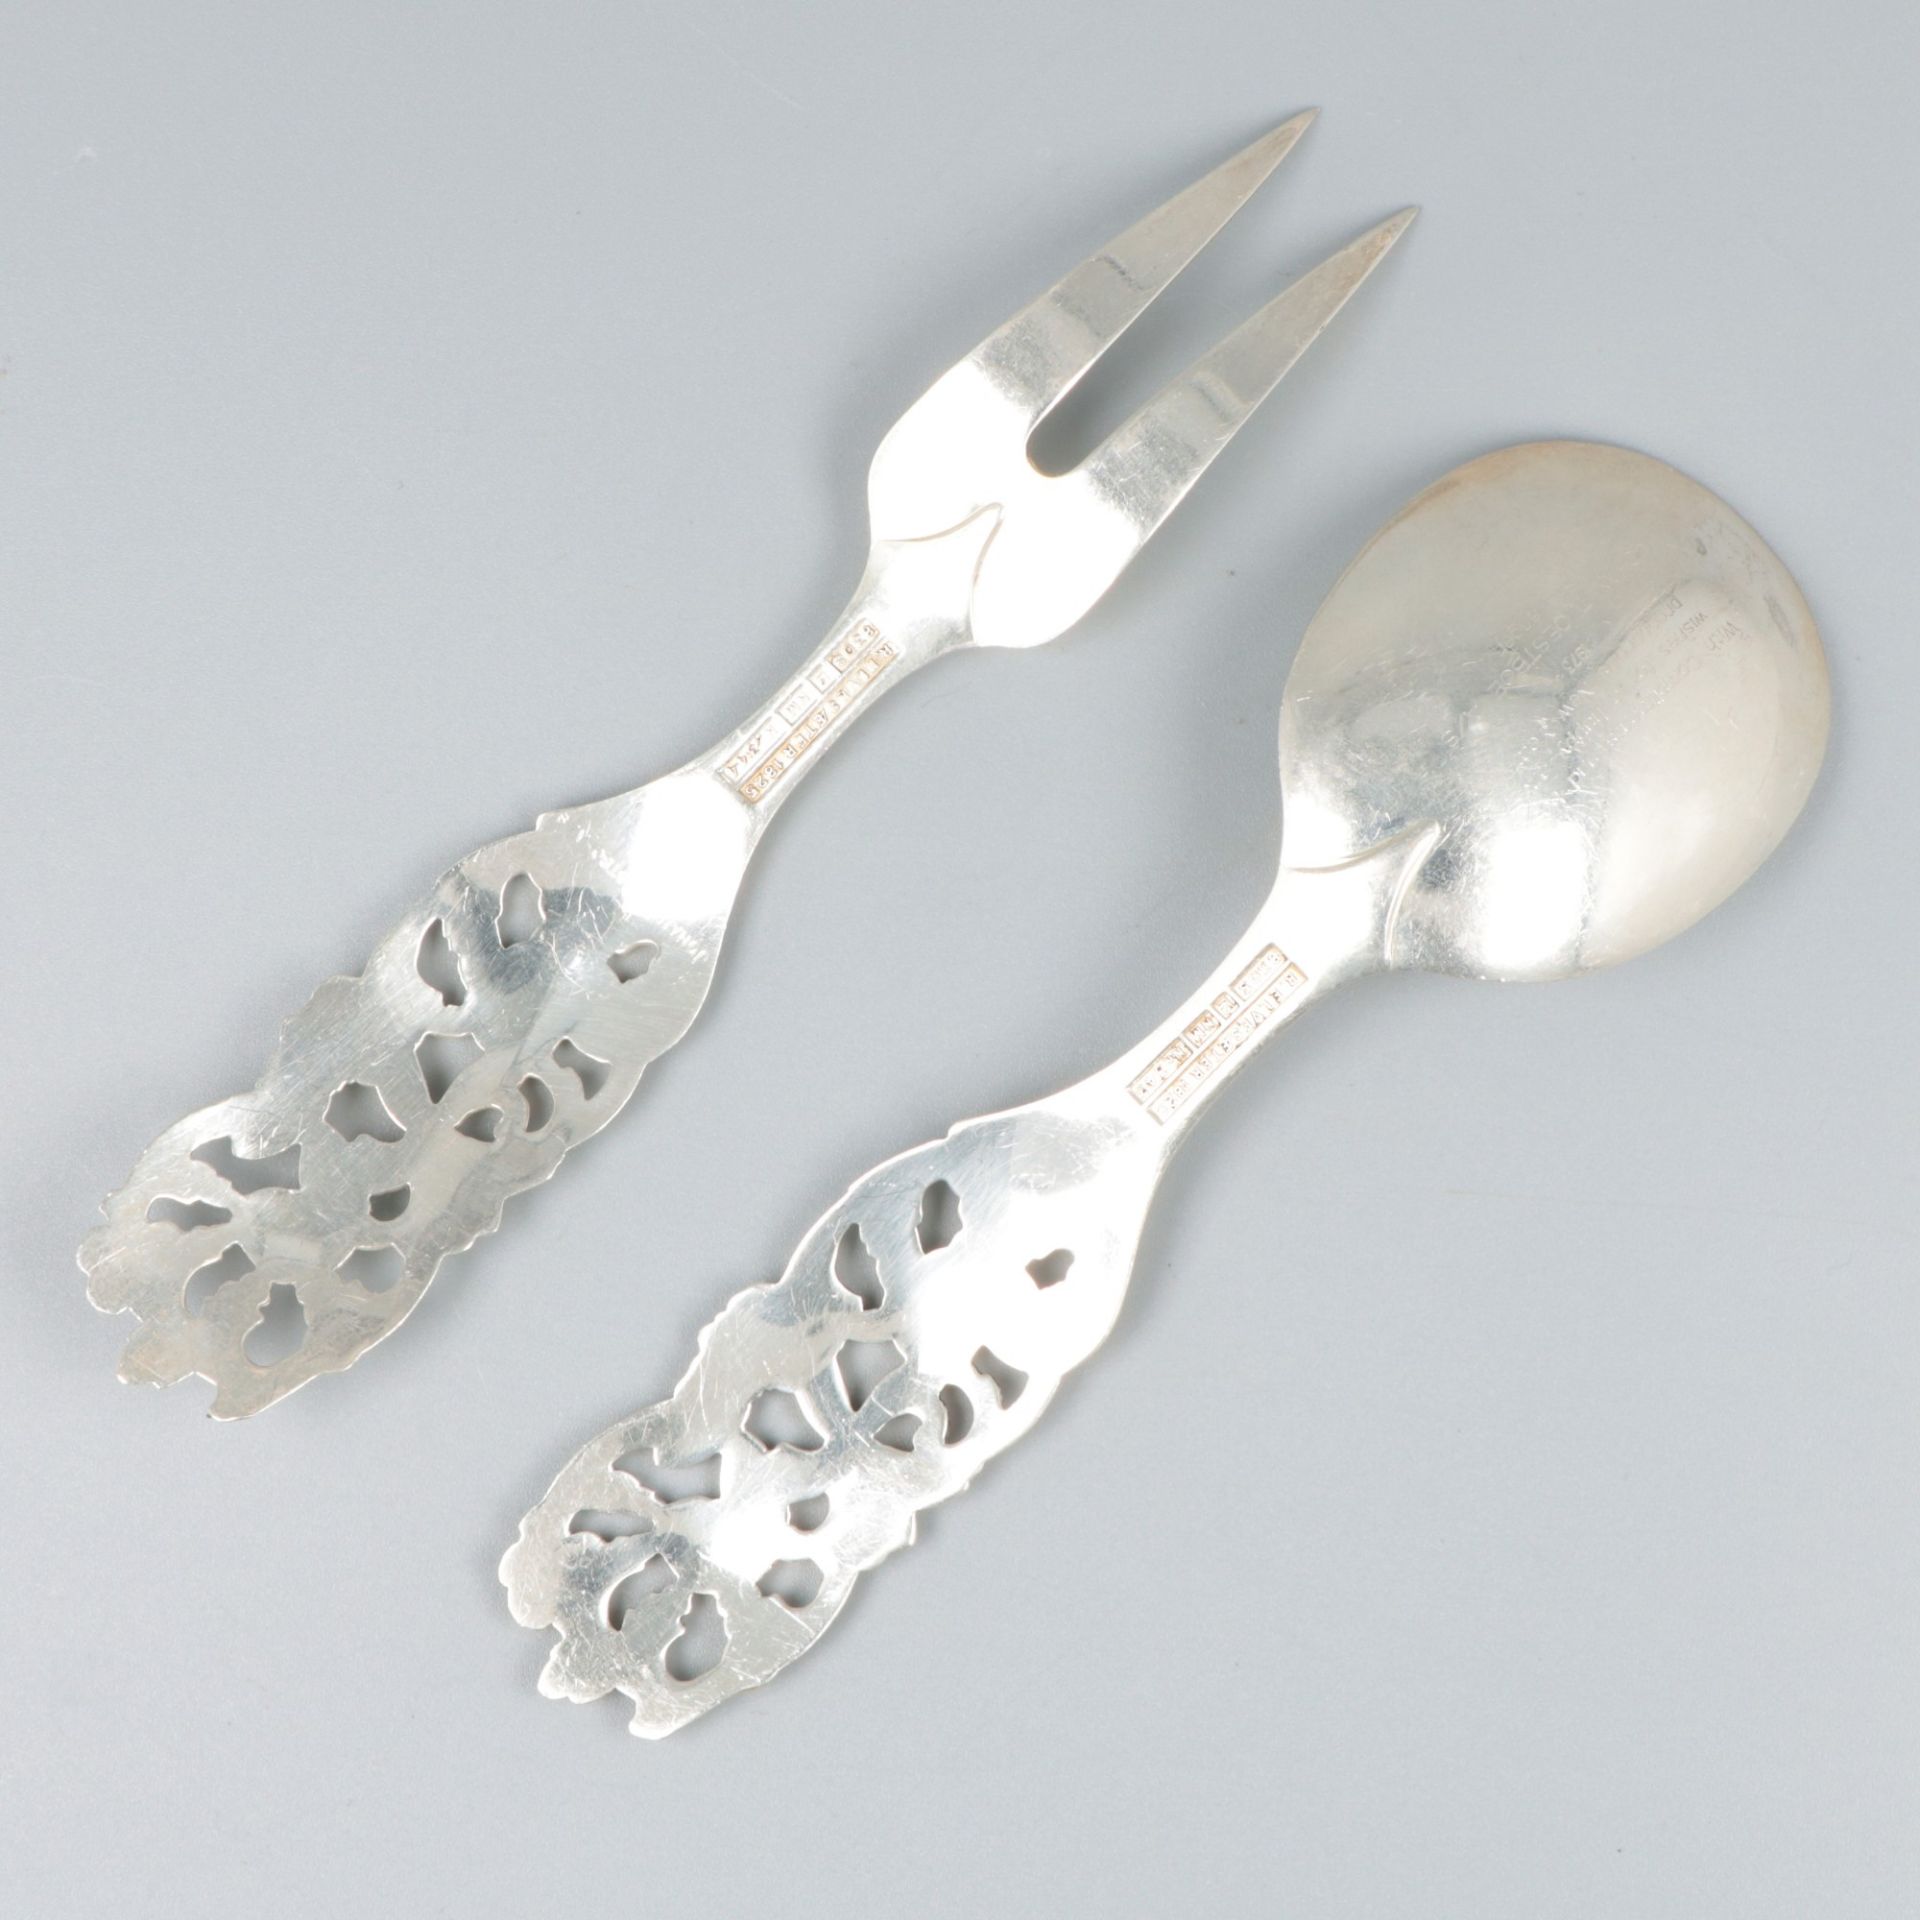 Jam spoon (Elvesæter no. 343) and serving fork (Elvesæter no. 344) (design by Brødrene Lohne, 1954)  - Image 3 of 7